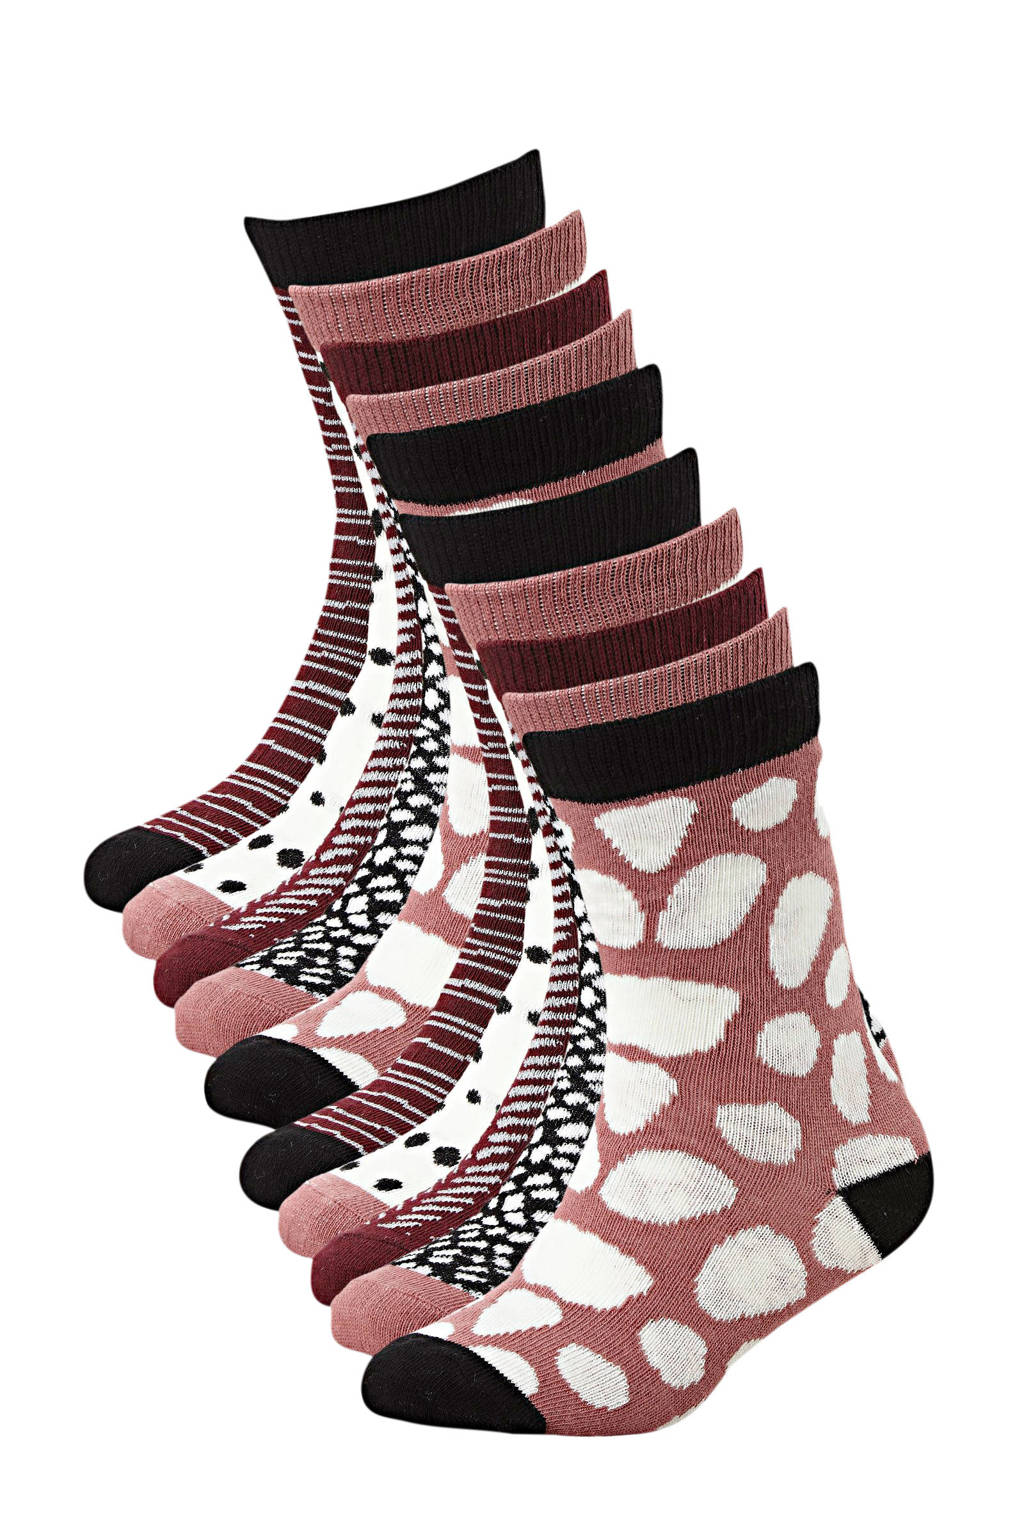 Apollo sokken - set van 10 donkerrood, Donkerrood